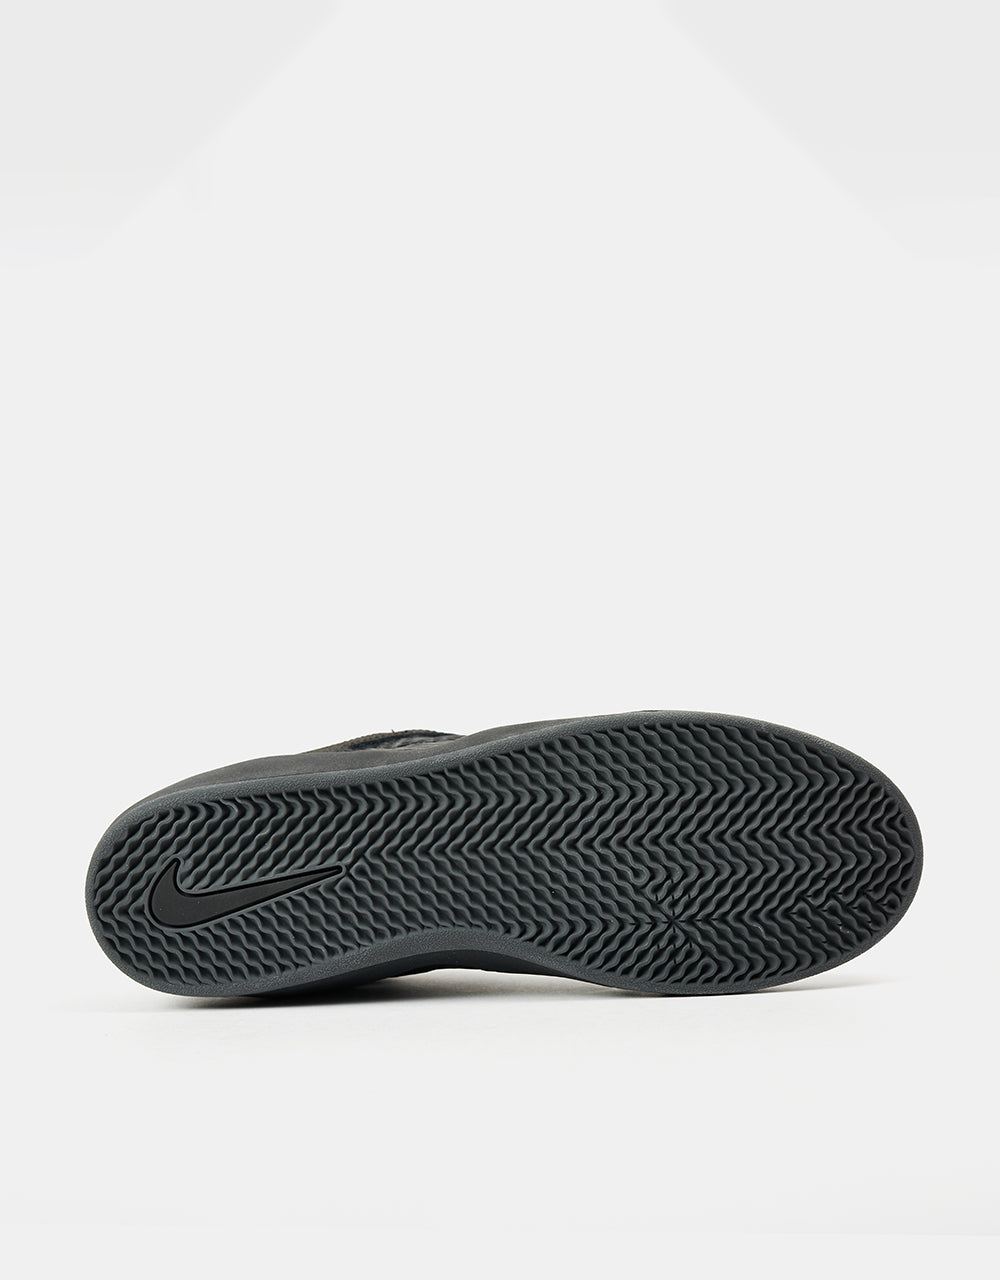 Nike SB Ishod Premium Skate Shoes - Black/Black-Black-Black